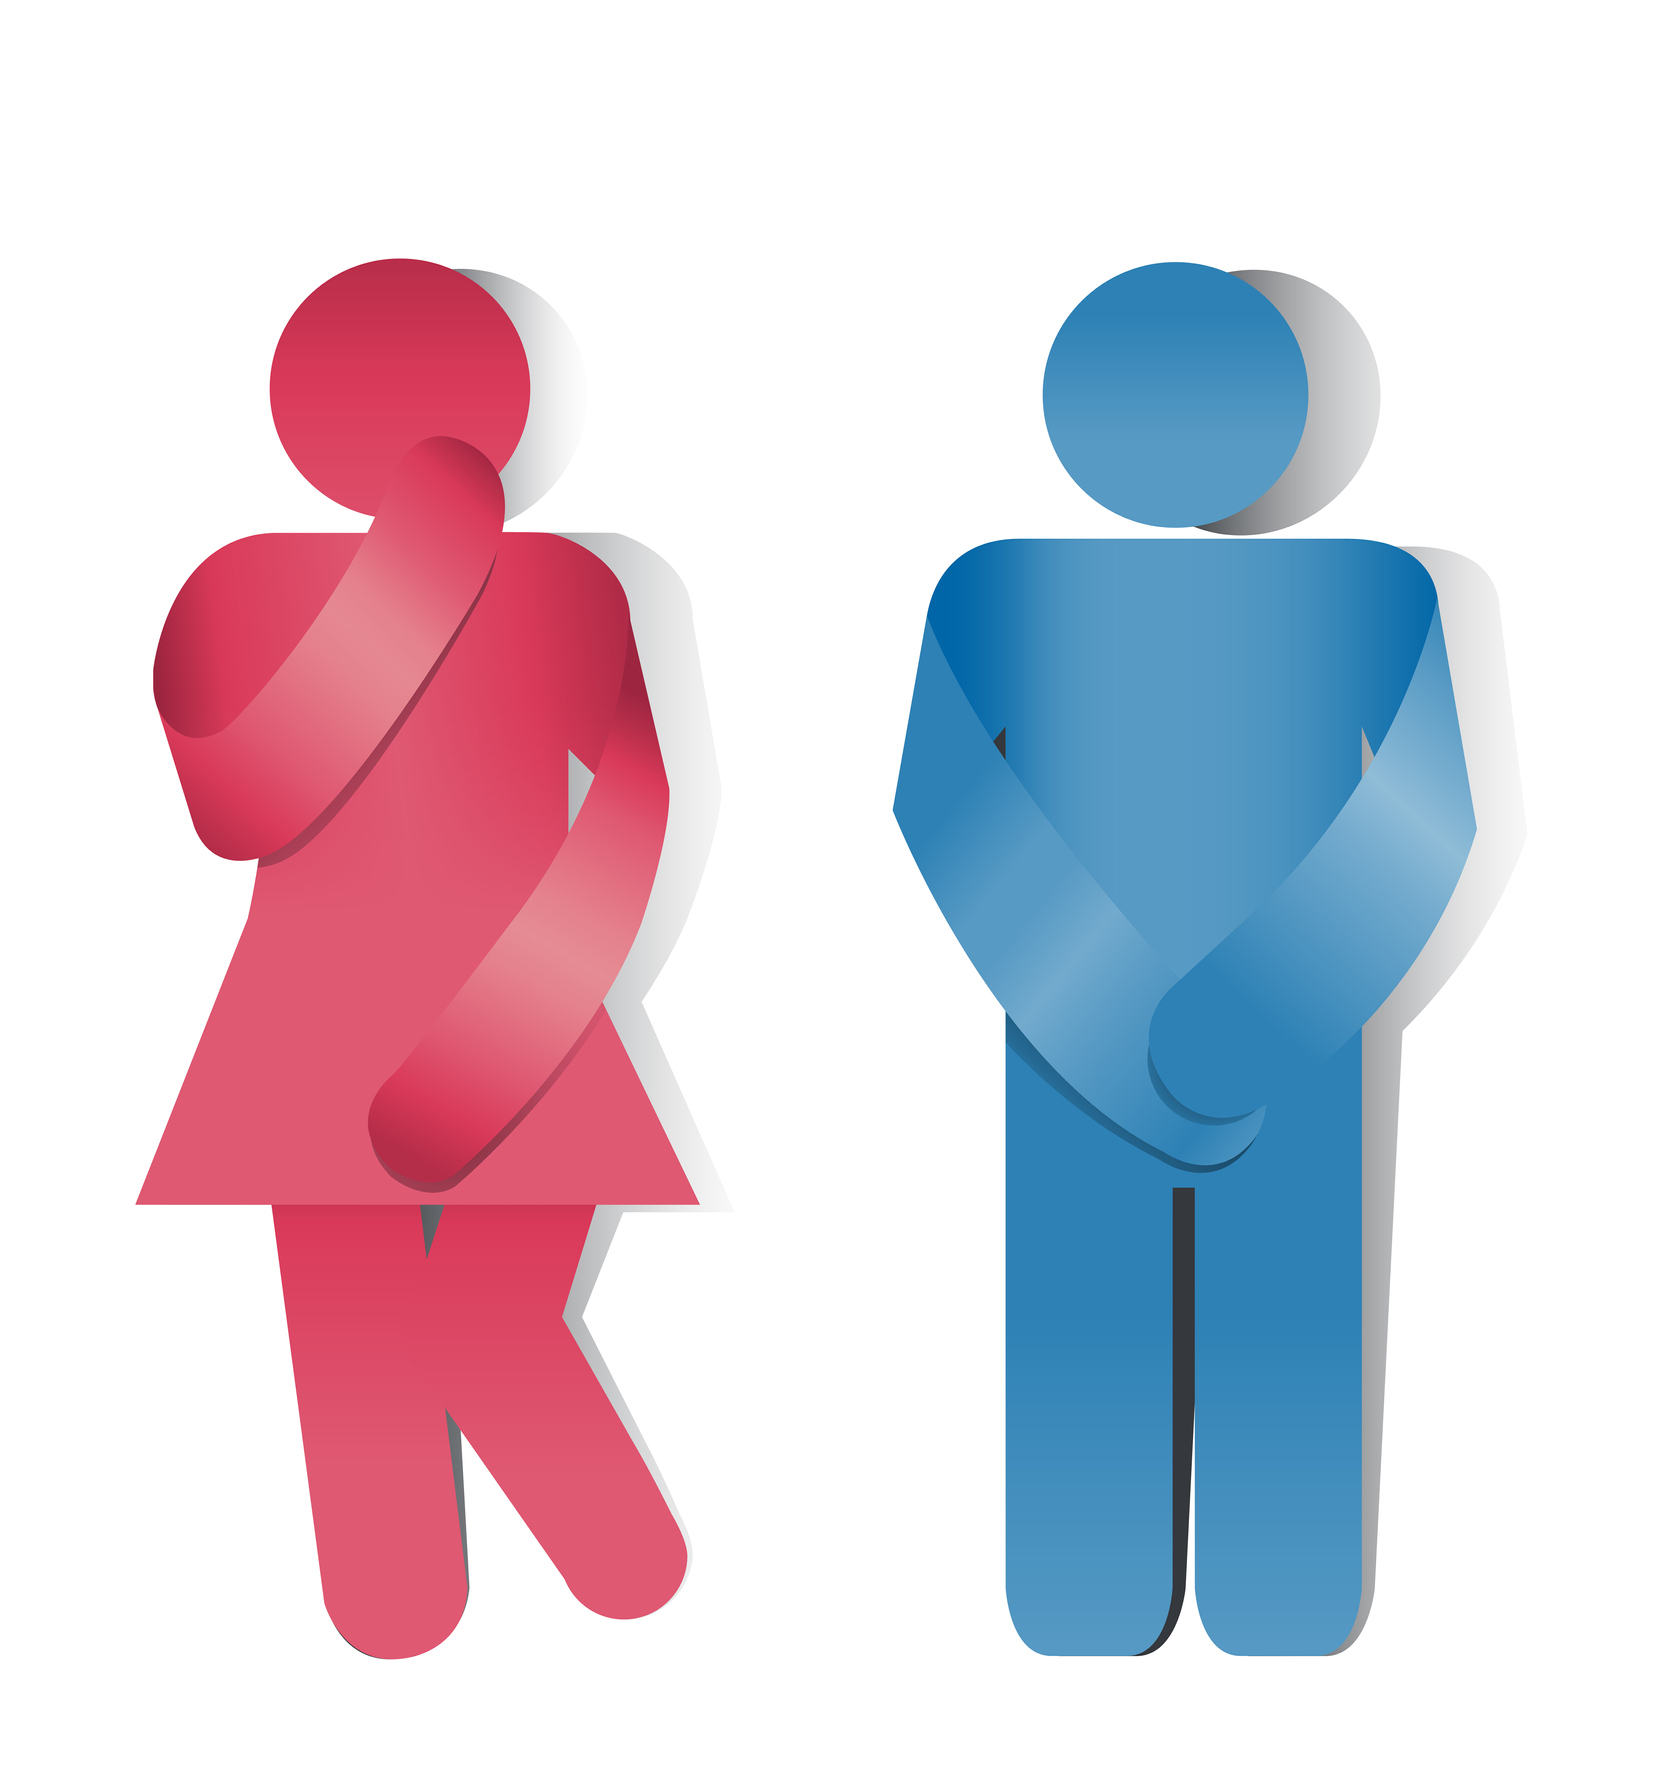 Inkontinencija može da pogodi i žene i muškarce, ali je mnogo češća kod žena